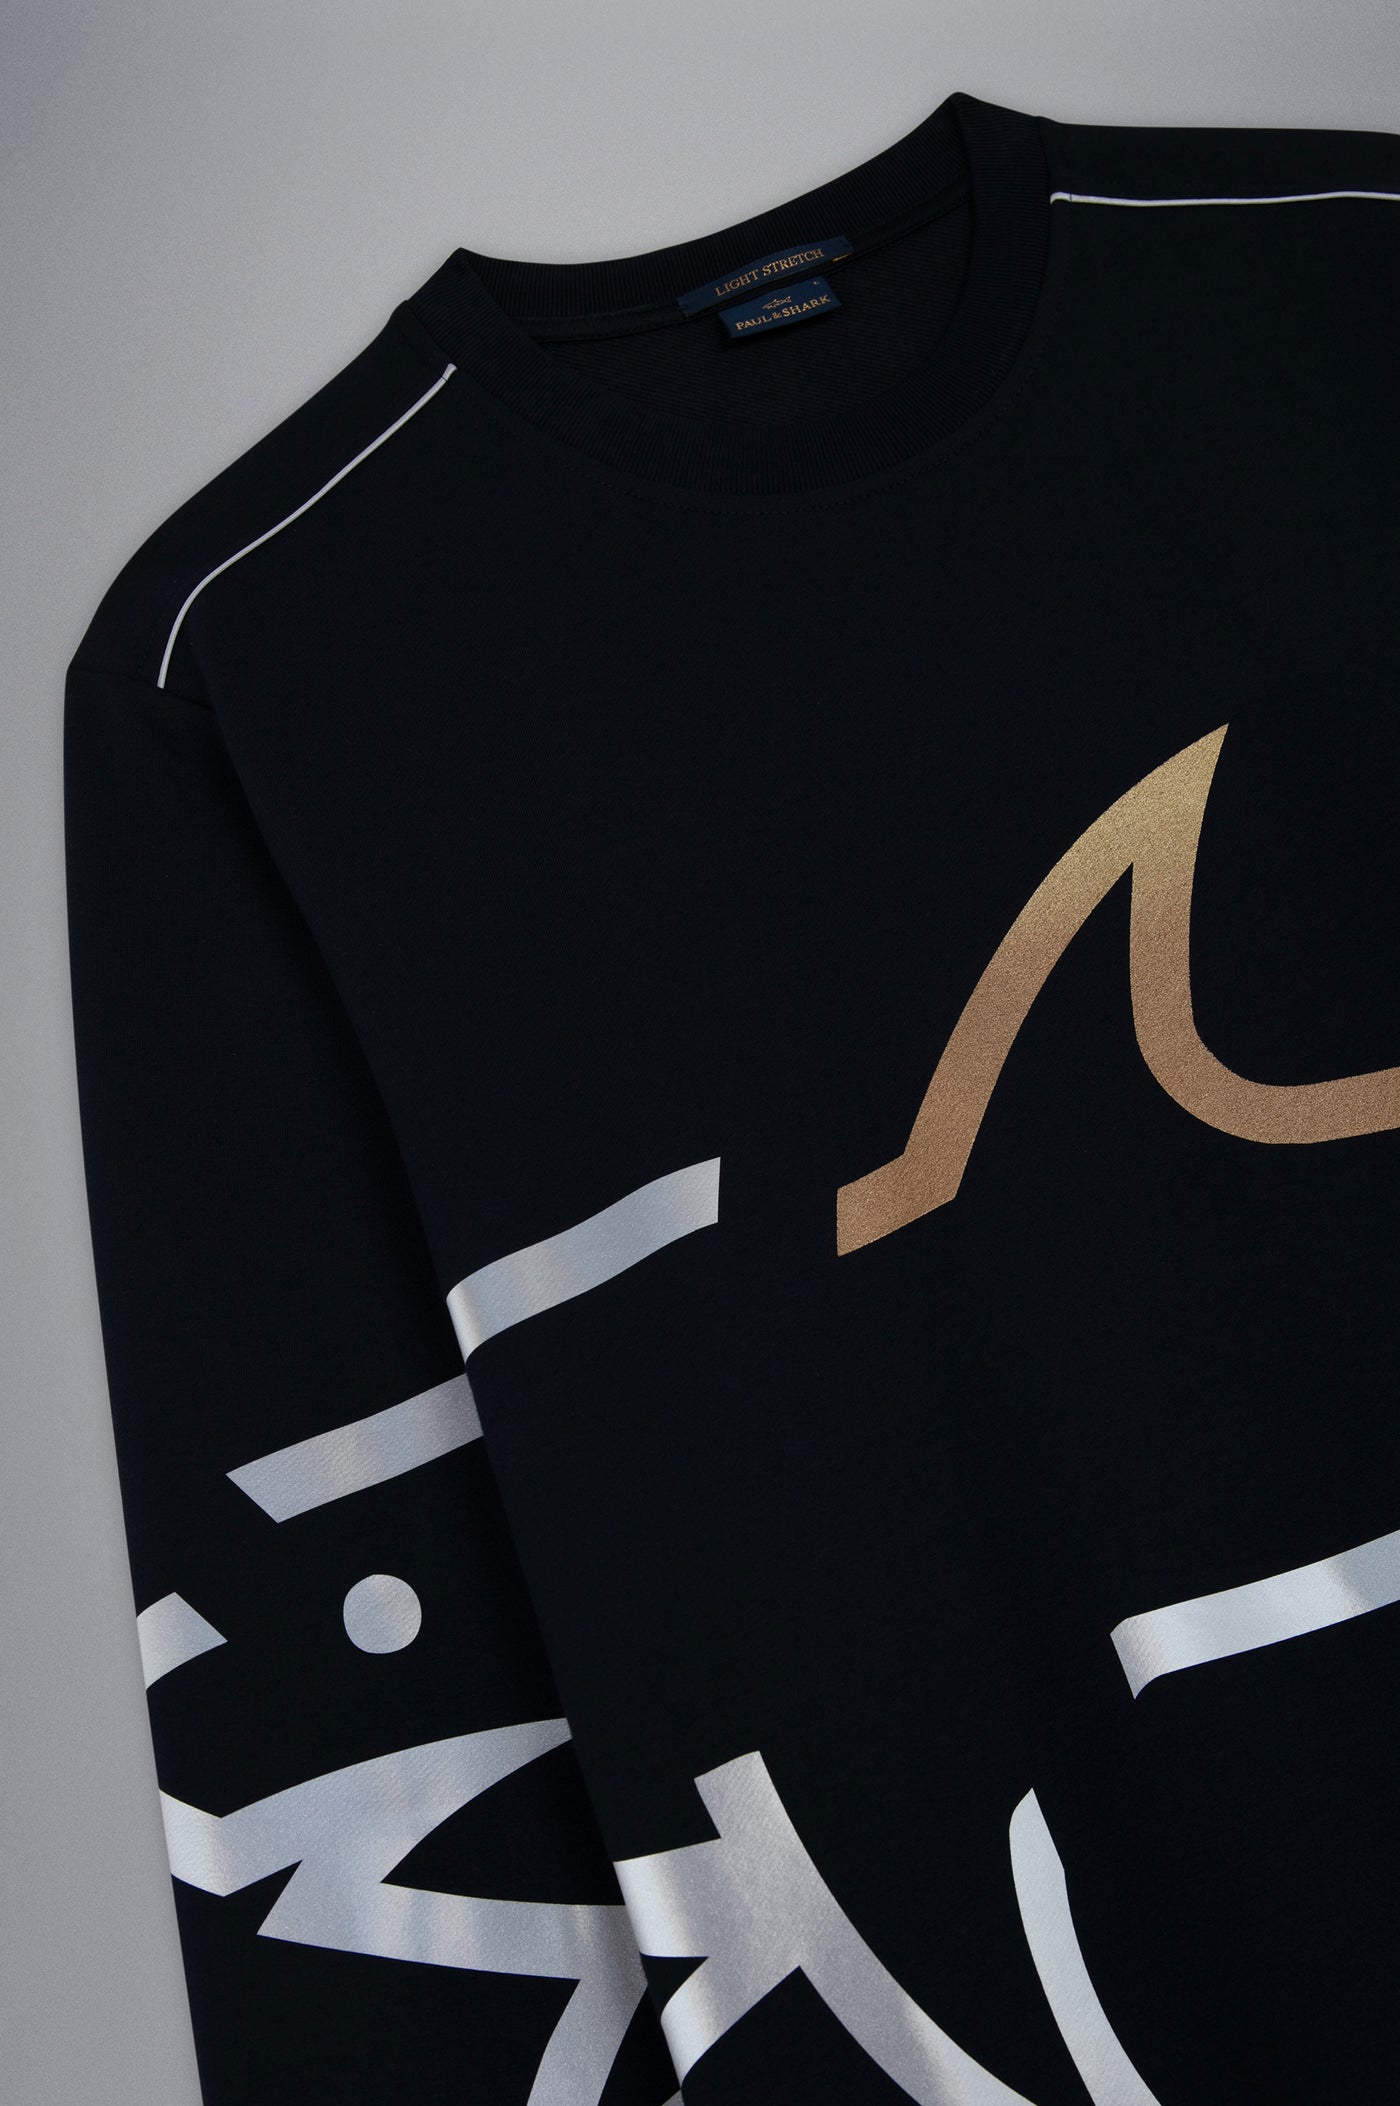 Paul & Shark Sweatshirt with Maxi Shark Print | Navy